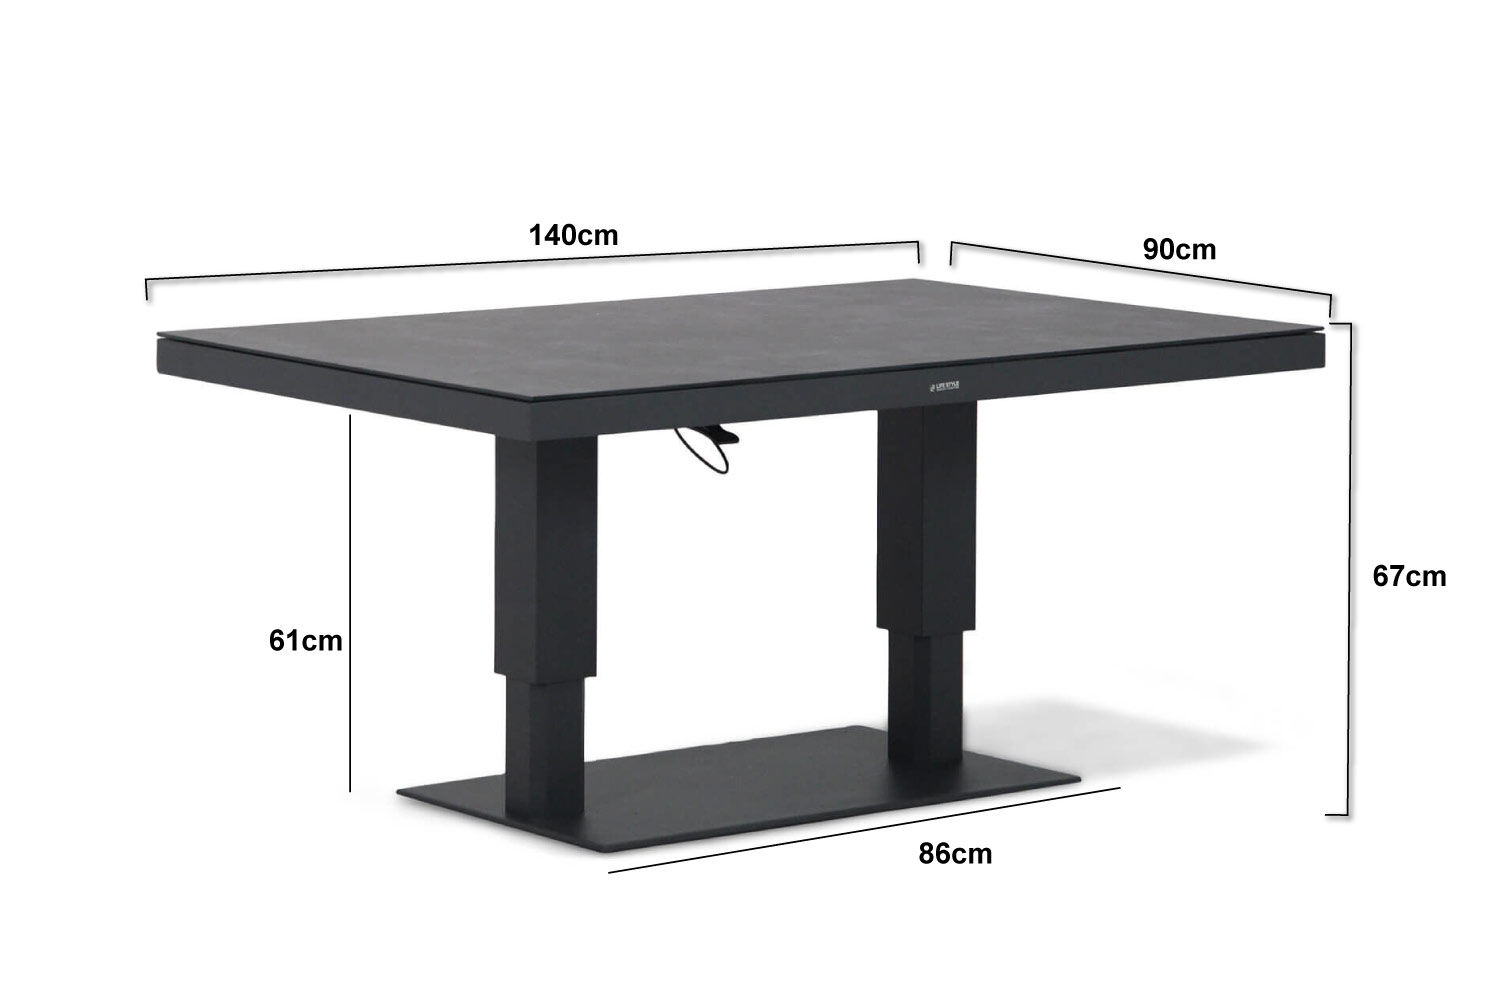 inzet Bad Onderscheppen Lifestyle Versatile in hoogte verstelbare tafel 140x80cm